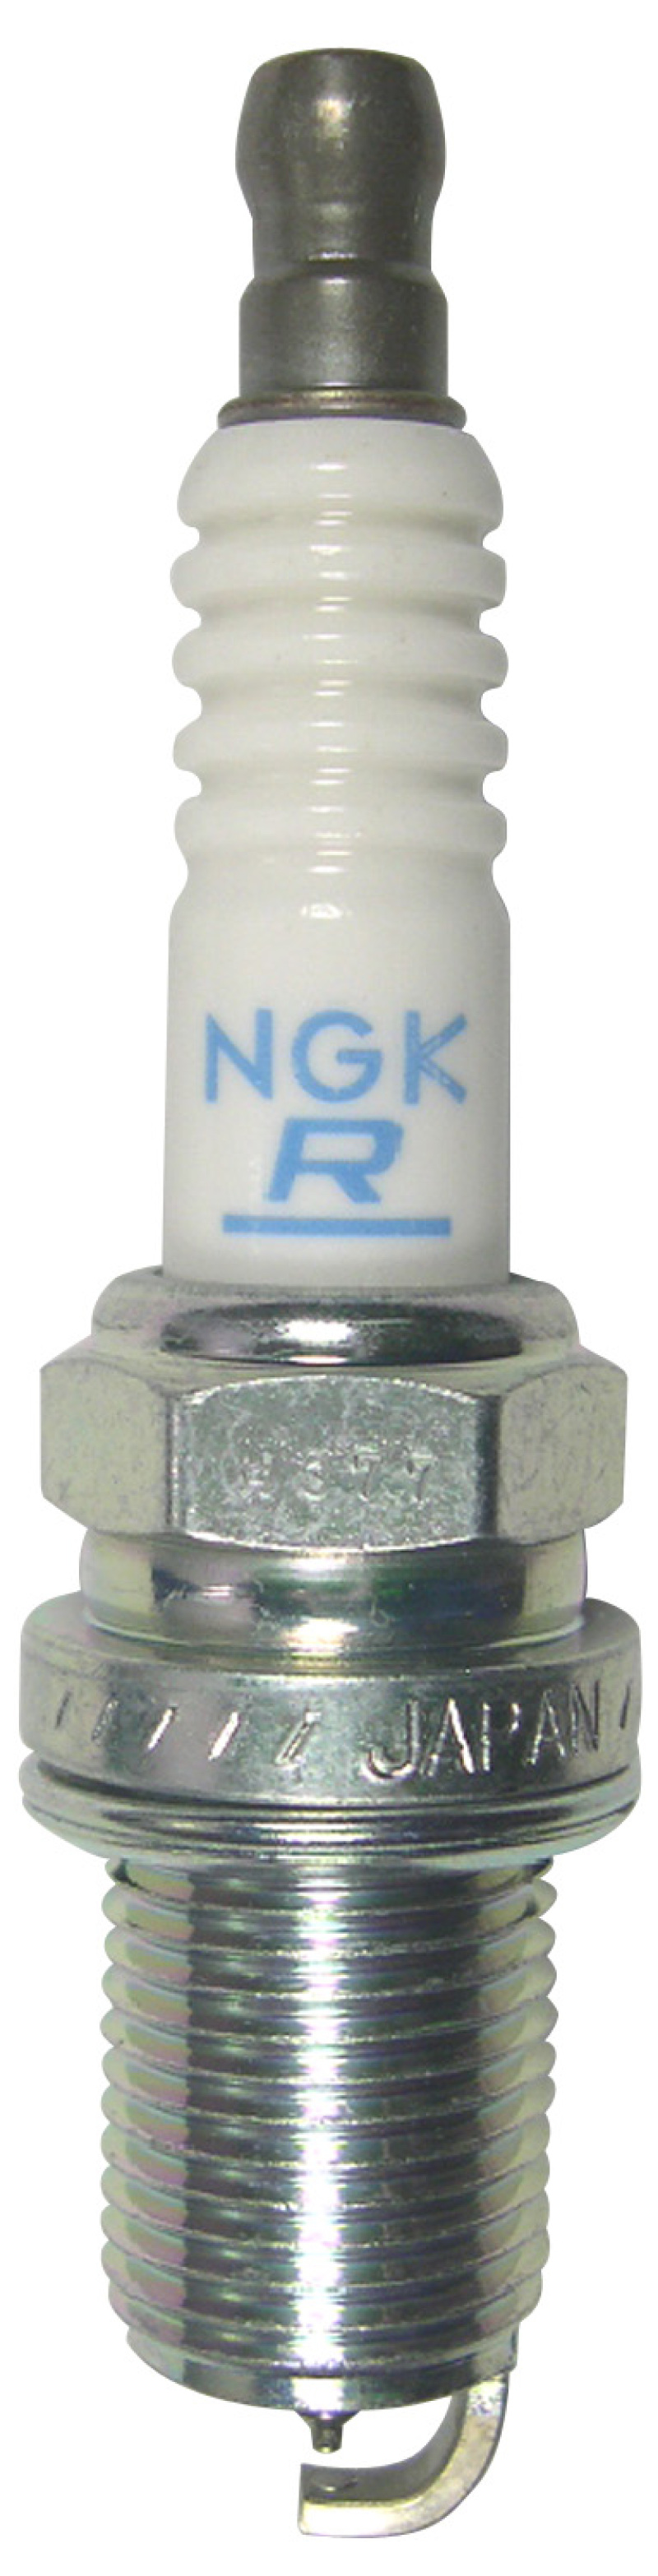 NGK Laser Iridium Spark Plug Box of 4 (IFR6V-10G) - 92085